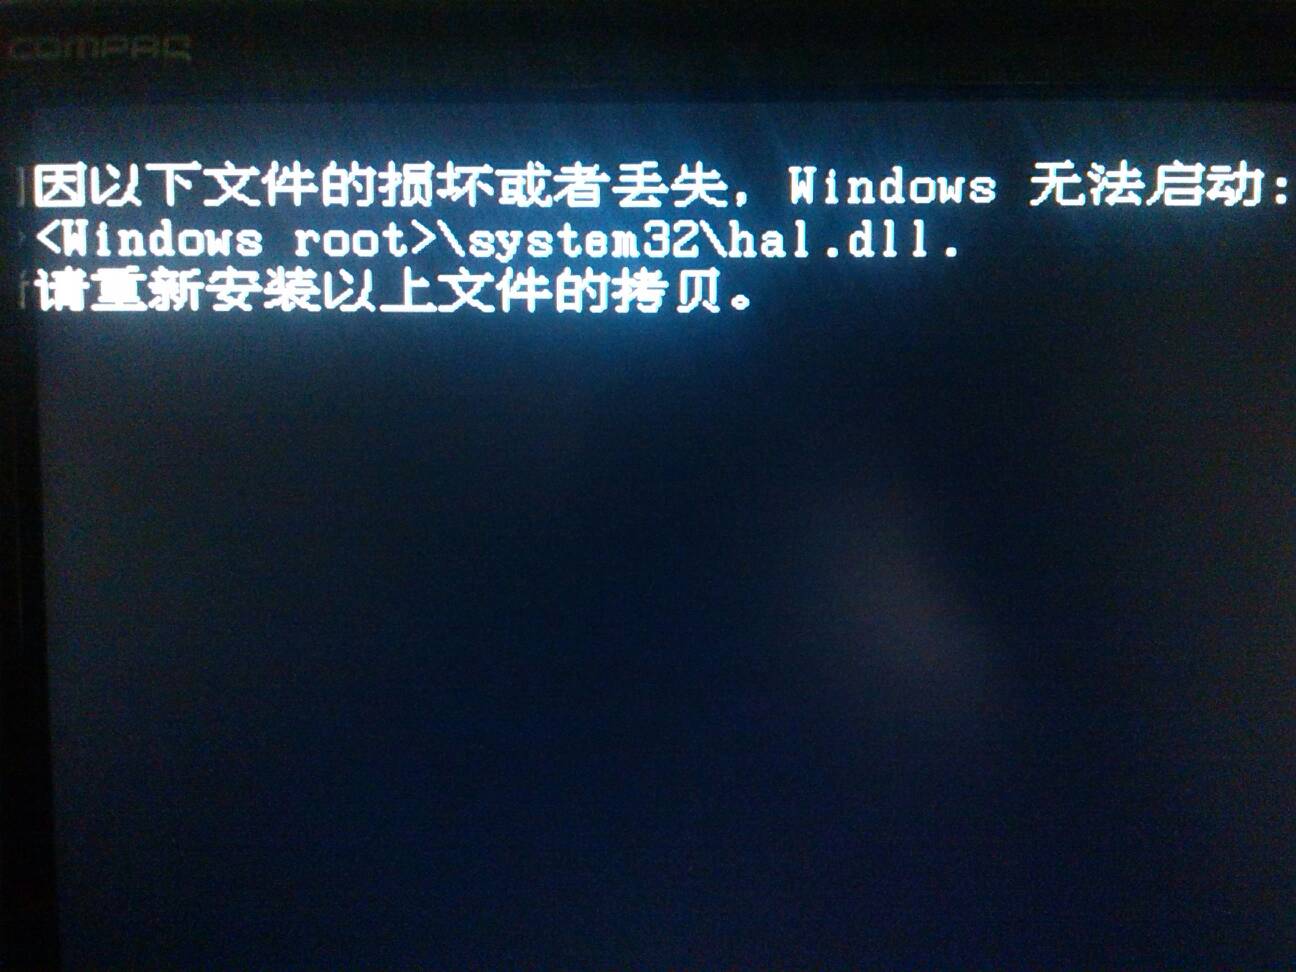 求助~~电脑重启就突然显示SYSTEM文件损坏了，怎么办啊？